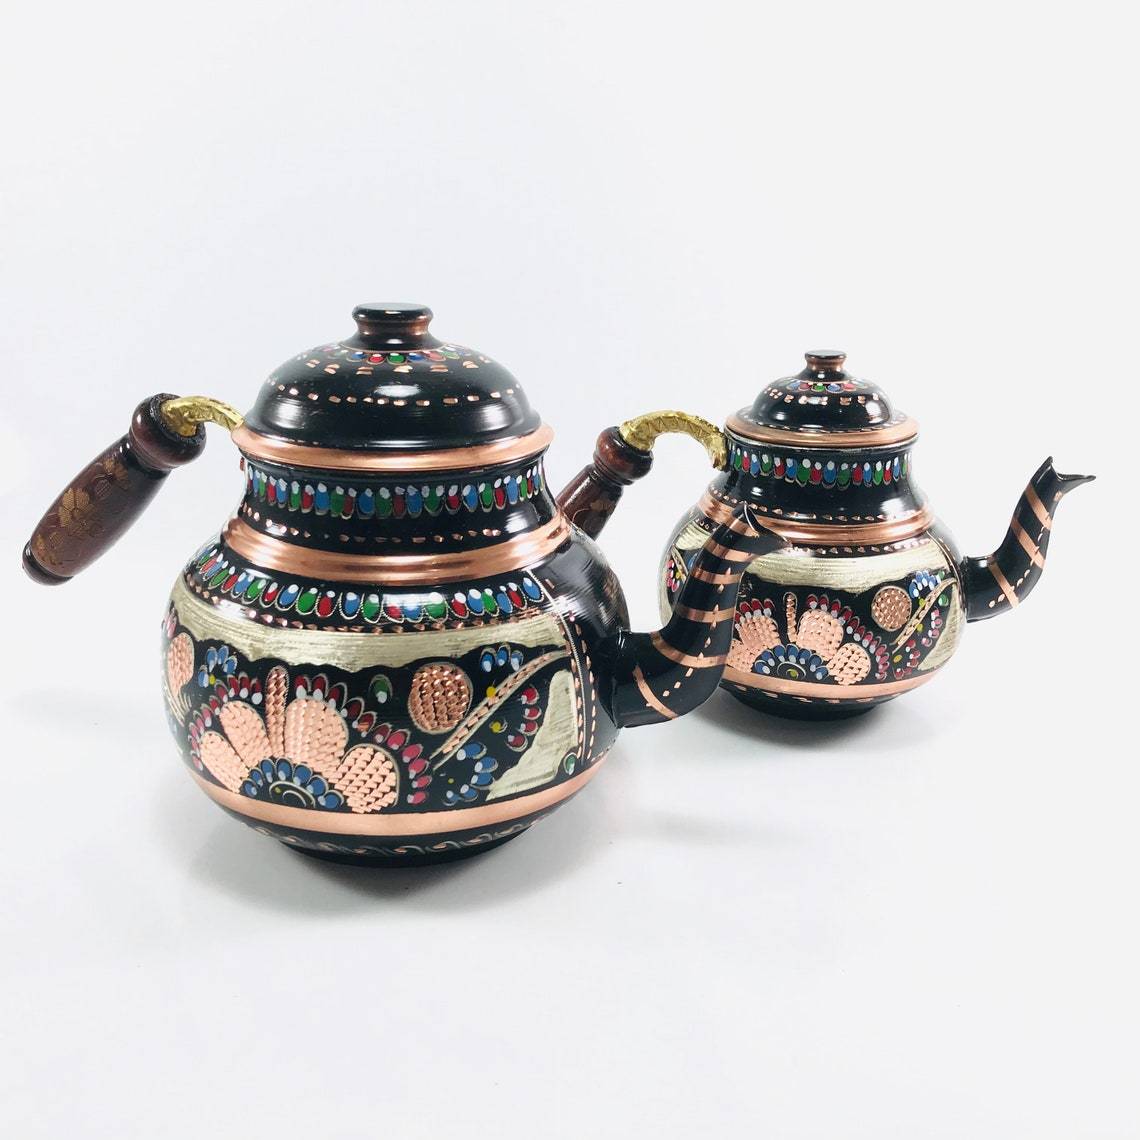 Copper Turkish TeaPot Tea Kettle Pots Set for Stove Top  Stovetop Decorative Infuser Vintage Antique Floral Farmhouse Glasses Tray  Cups Serving Party Moroccan Decor Style Unique Kitchen Women: Teapots